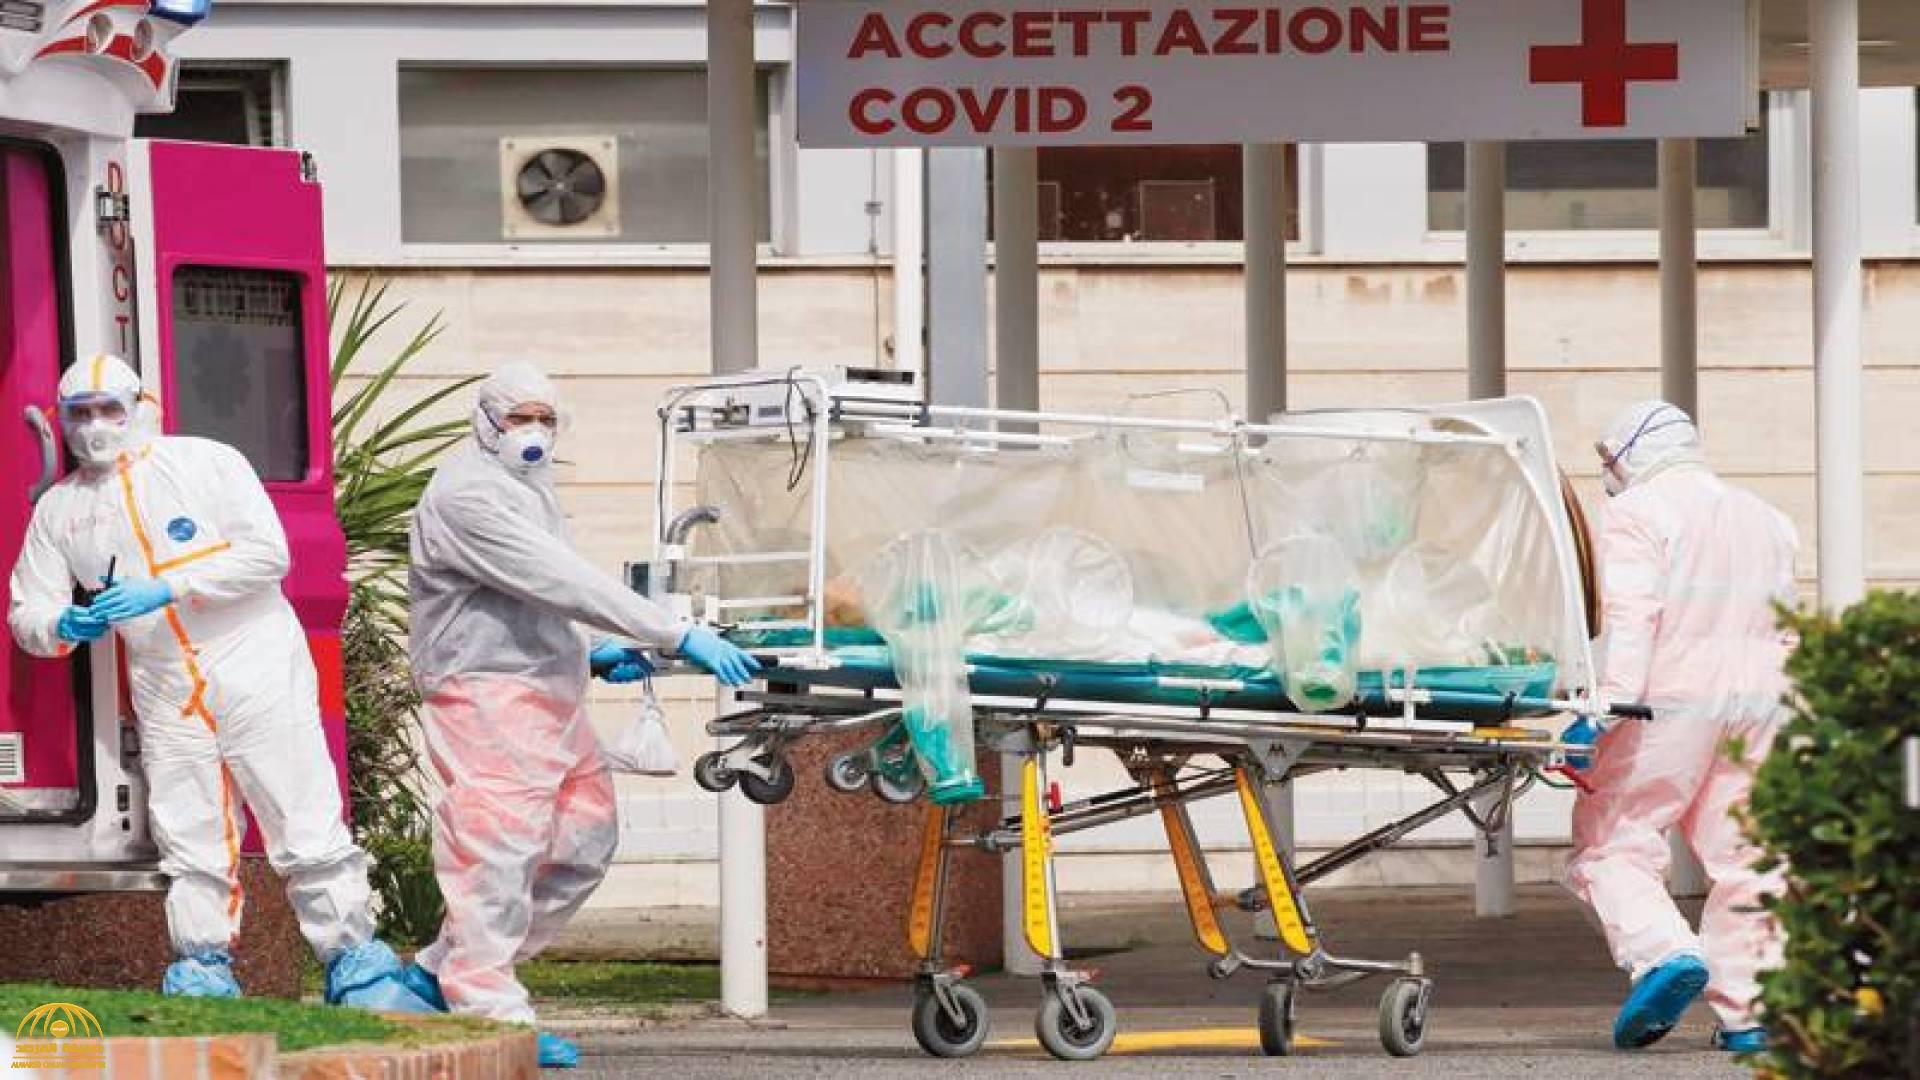 خبر صادم من إيطاليا عن عدد الوفيات بسبب "كورونا" خلال 24 ساعة الماضية